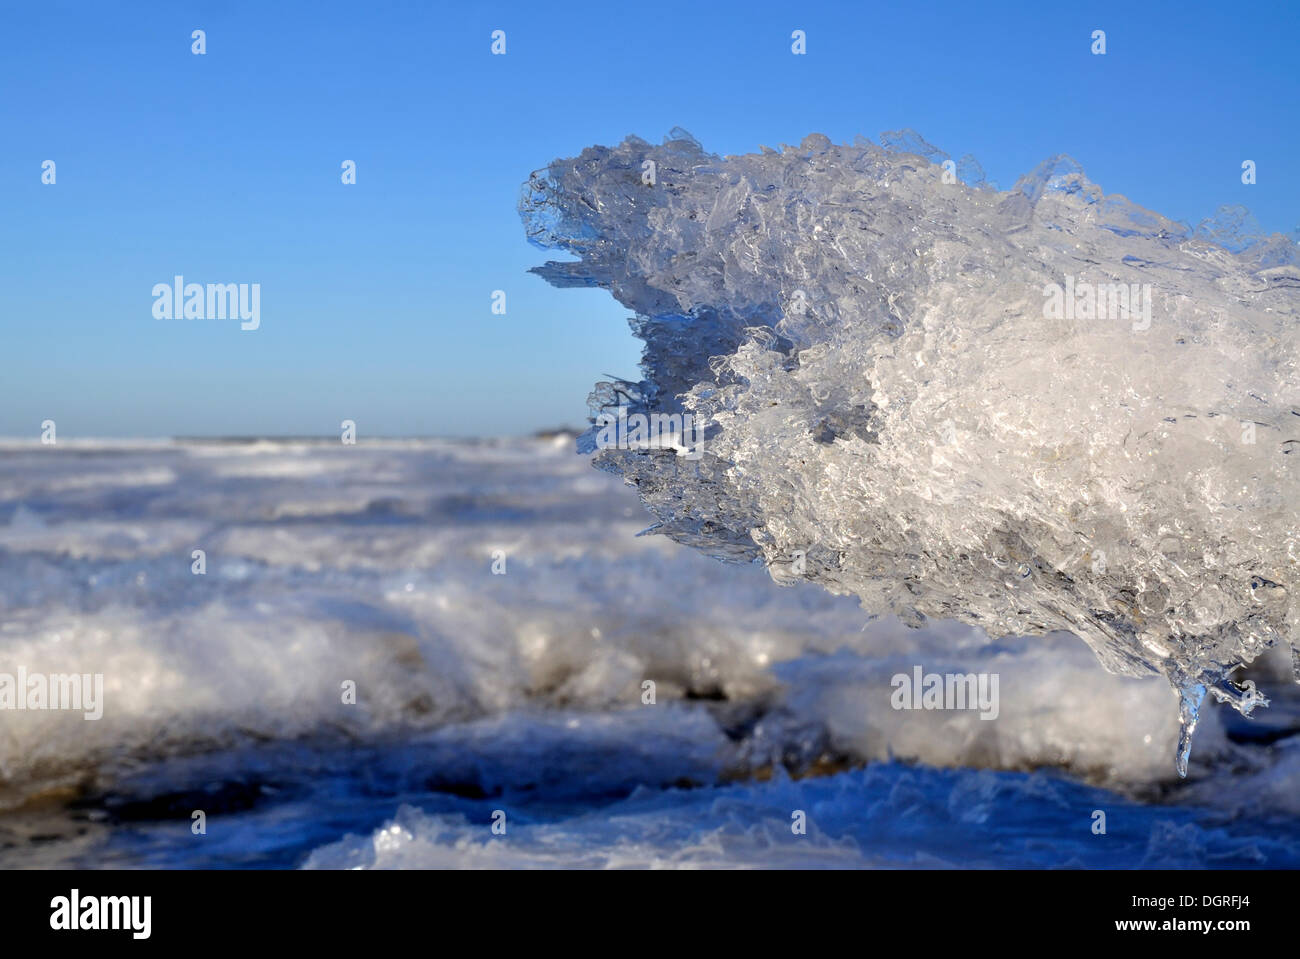 Sacando la lengua de hielo, congelados en aguas poco profundas de la zona del mar Báltico, cerca de Stein, probstei, distrito ploen Foto de stock